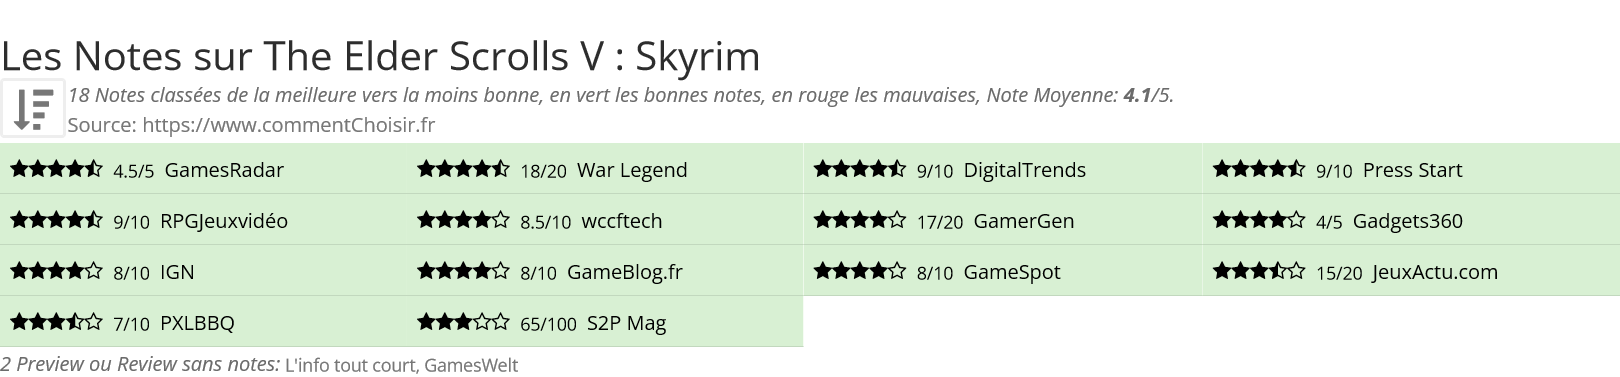 Ratings The Elder Scrolls V : Skyrim